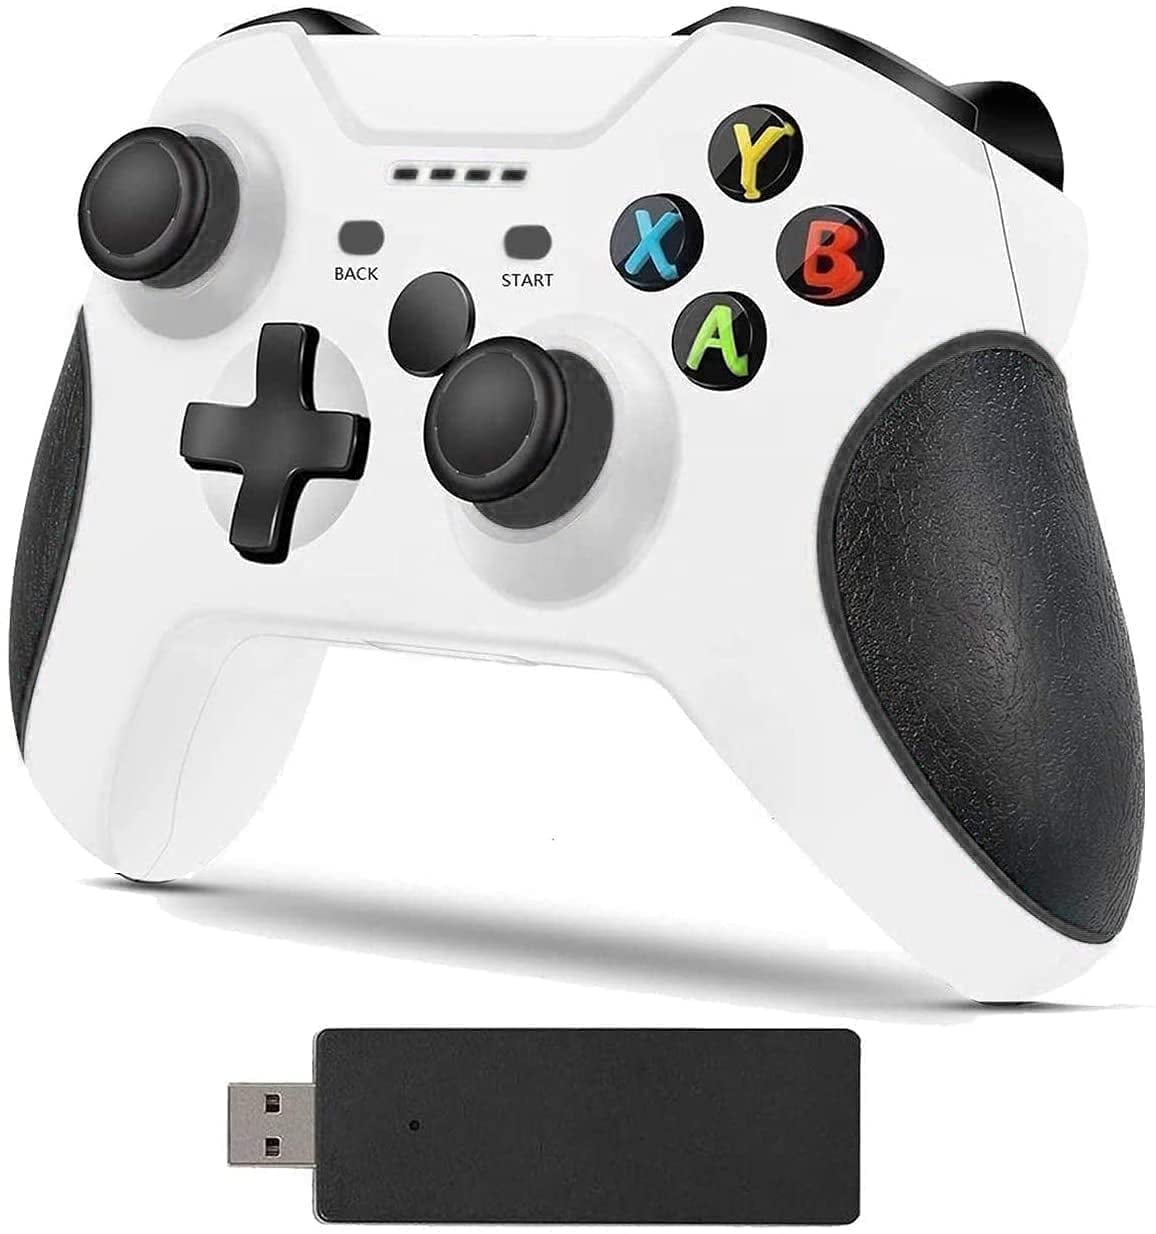  YCCSKY Controlador inalámbrico para Xbox 360 con receptor,  controlador de juego de 2.4 GHZ Control remoto inalámbrico 360 Controlador  de Gamepad Joystick para Xbox 360 Slim y PC con Windows 7/8/10 (